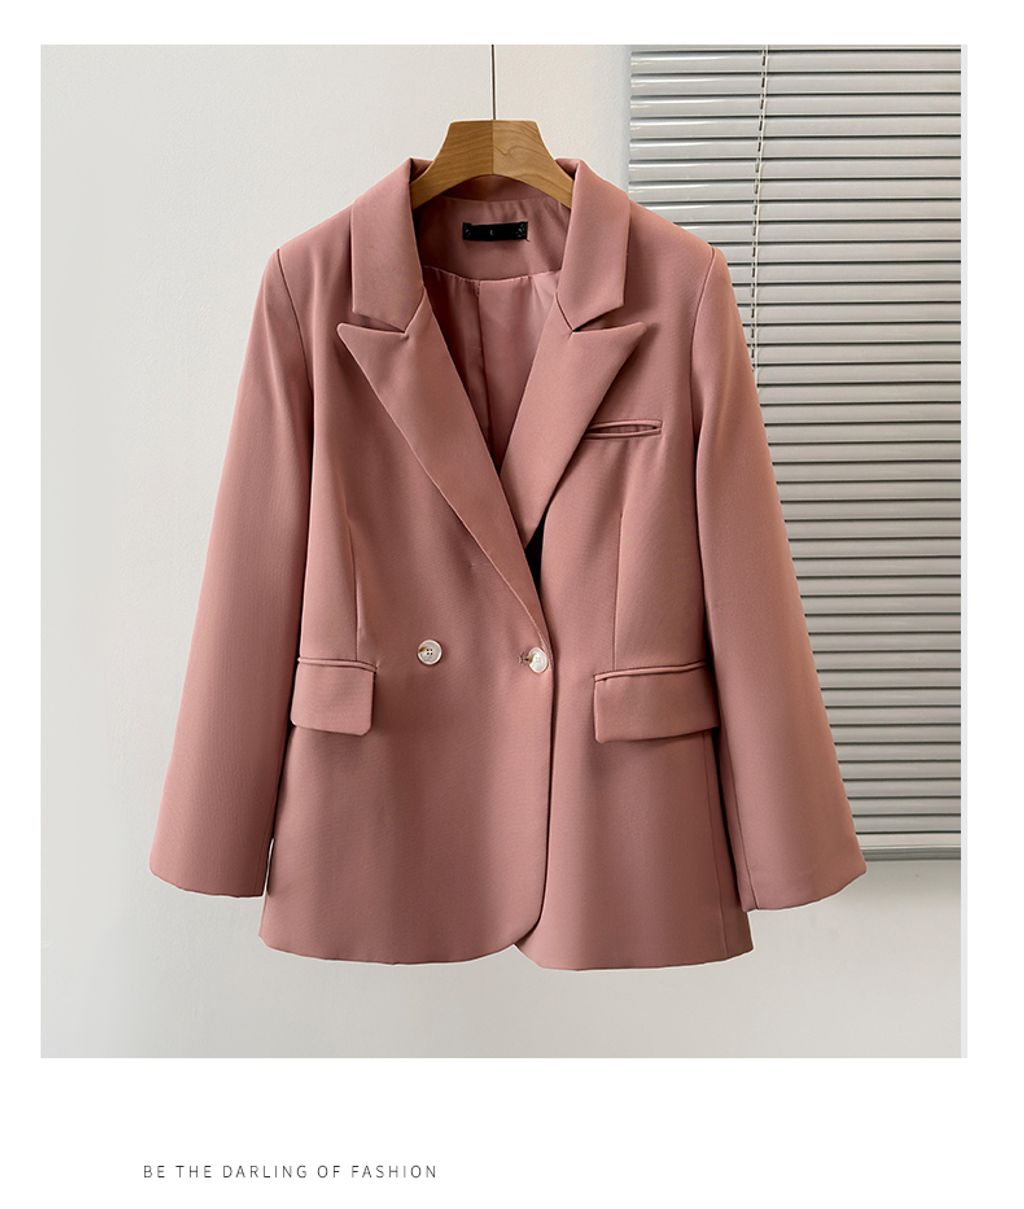 Pure Lust Style Versatile Plus Size Women's Suit Jacket-Light pin color